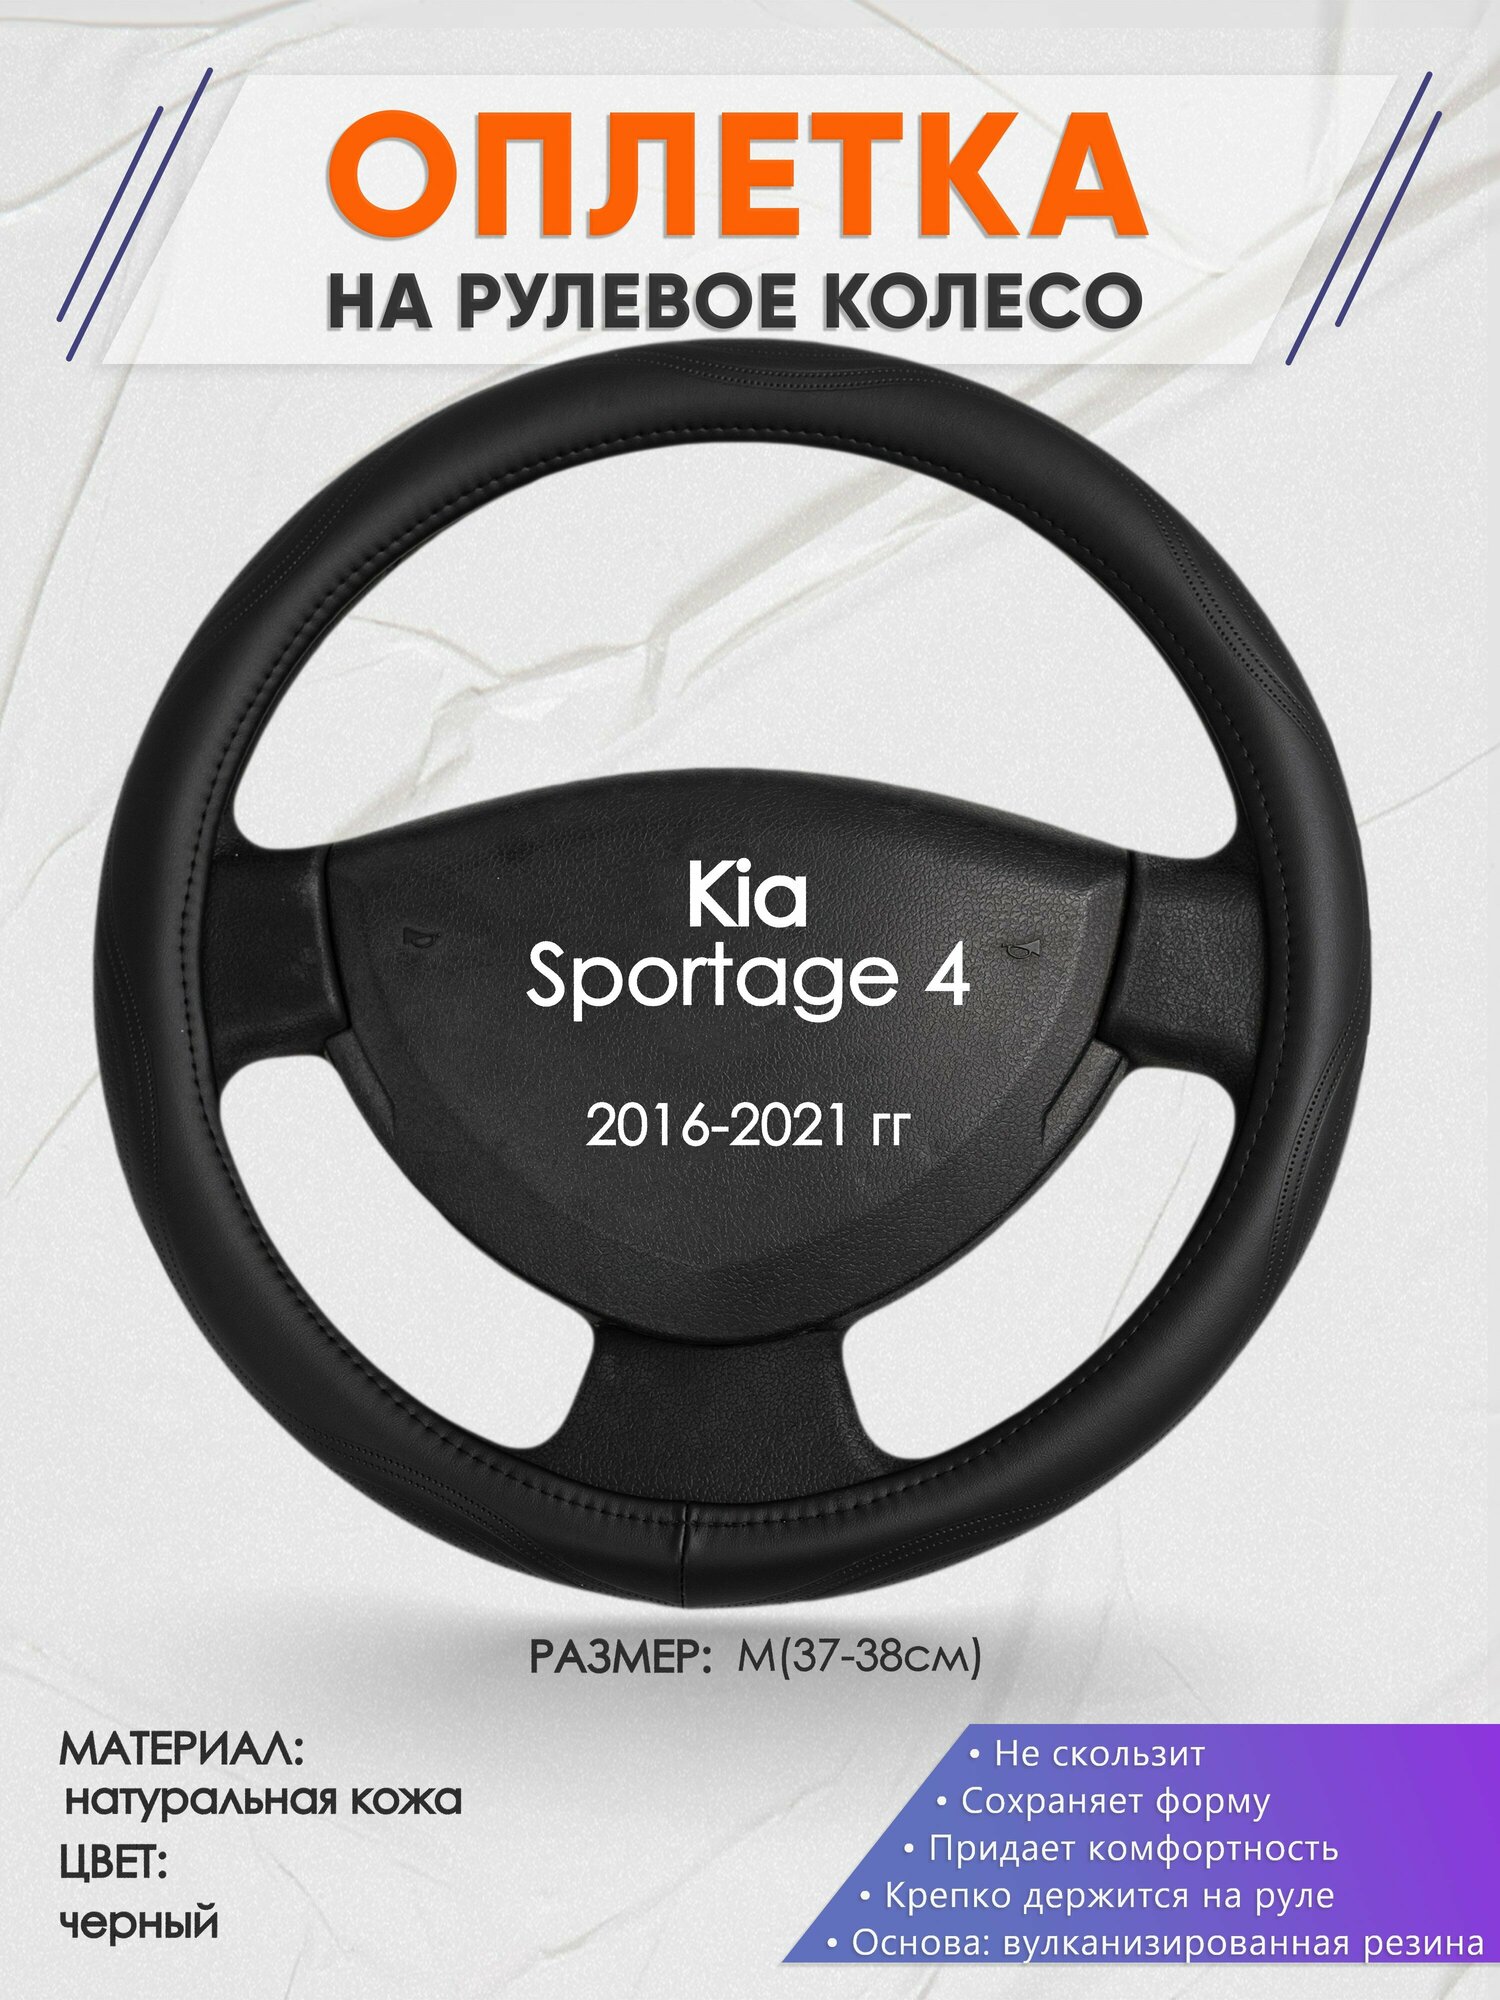 Оплетка на руль для Kia Sportage 4(Киа Спортейдж 4) 2016-2021, M(37-38см), Натуральная кожа 29